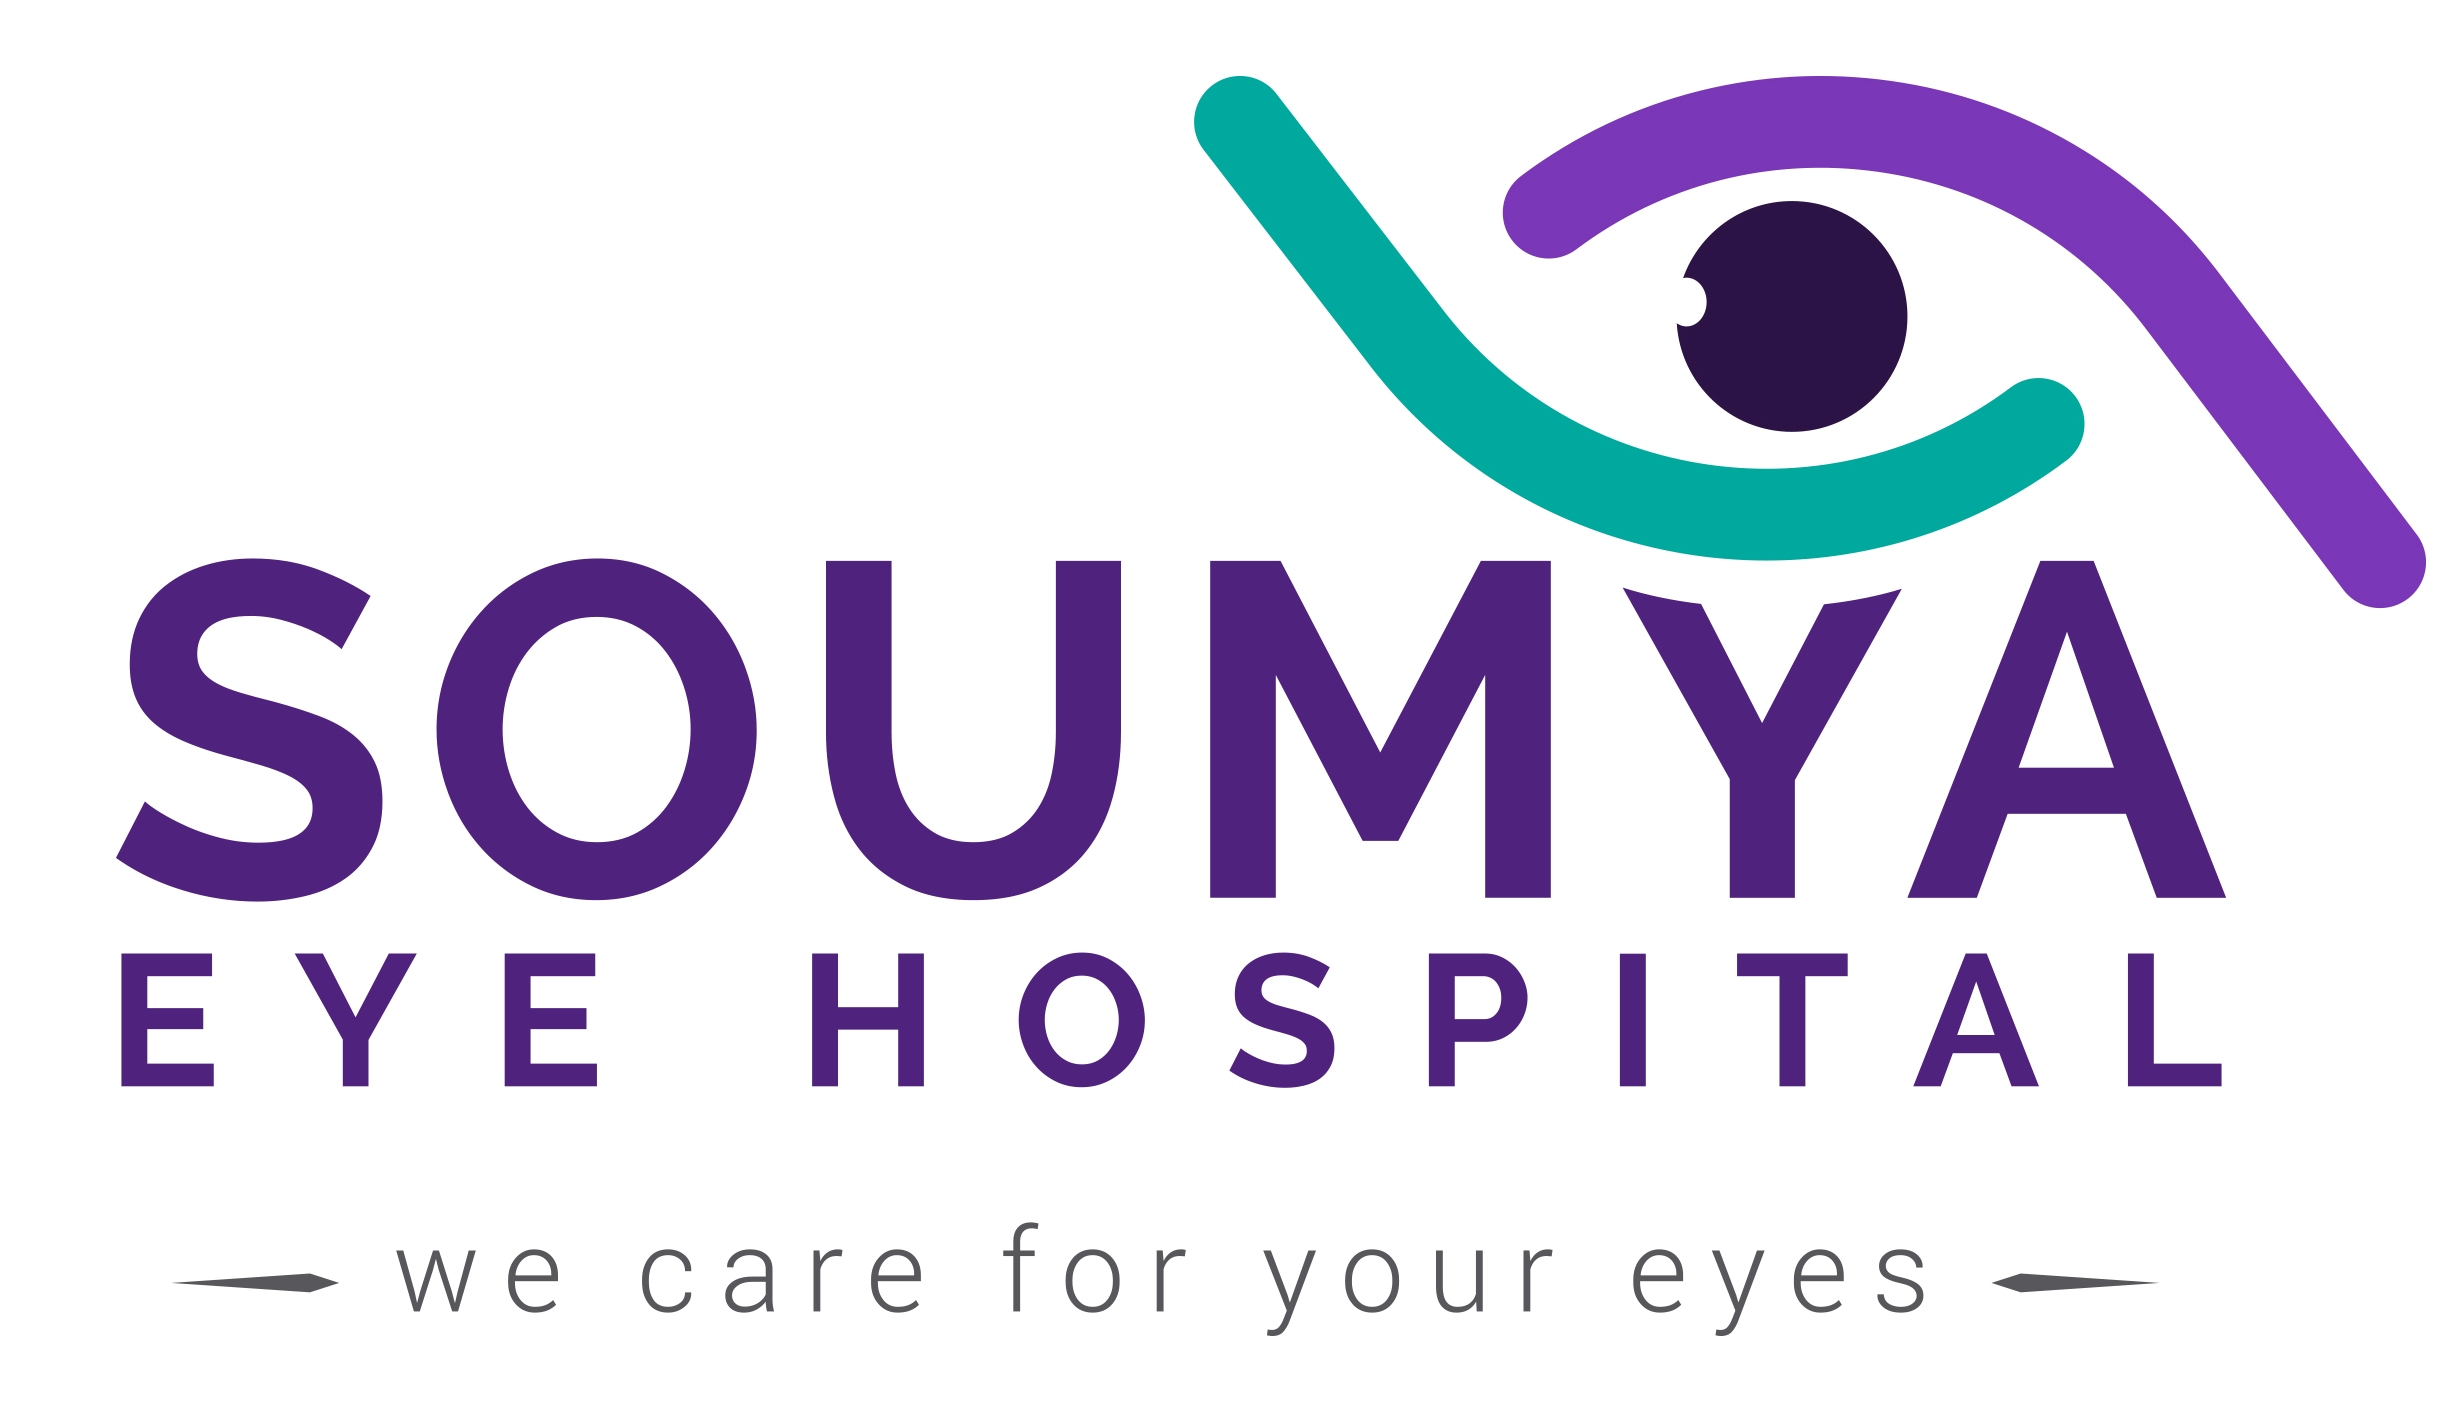 Soumya Eye Hospital|Hospitals|Medical Services